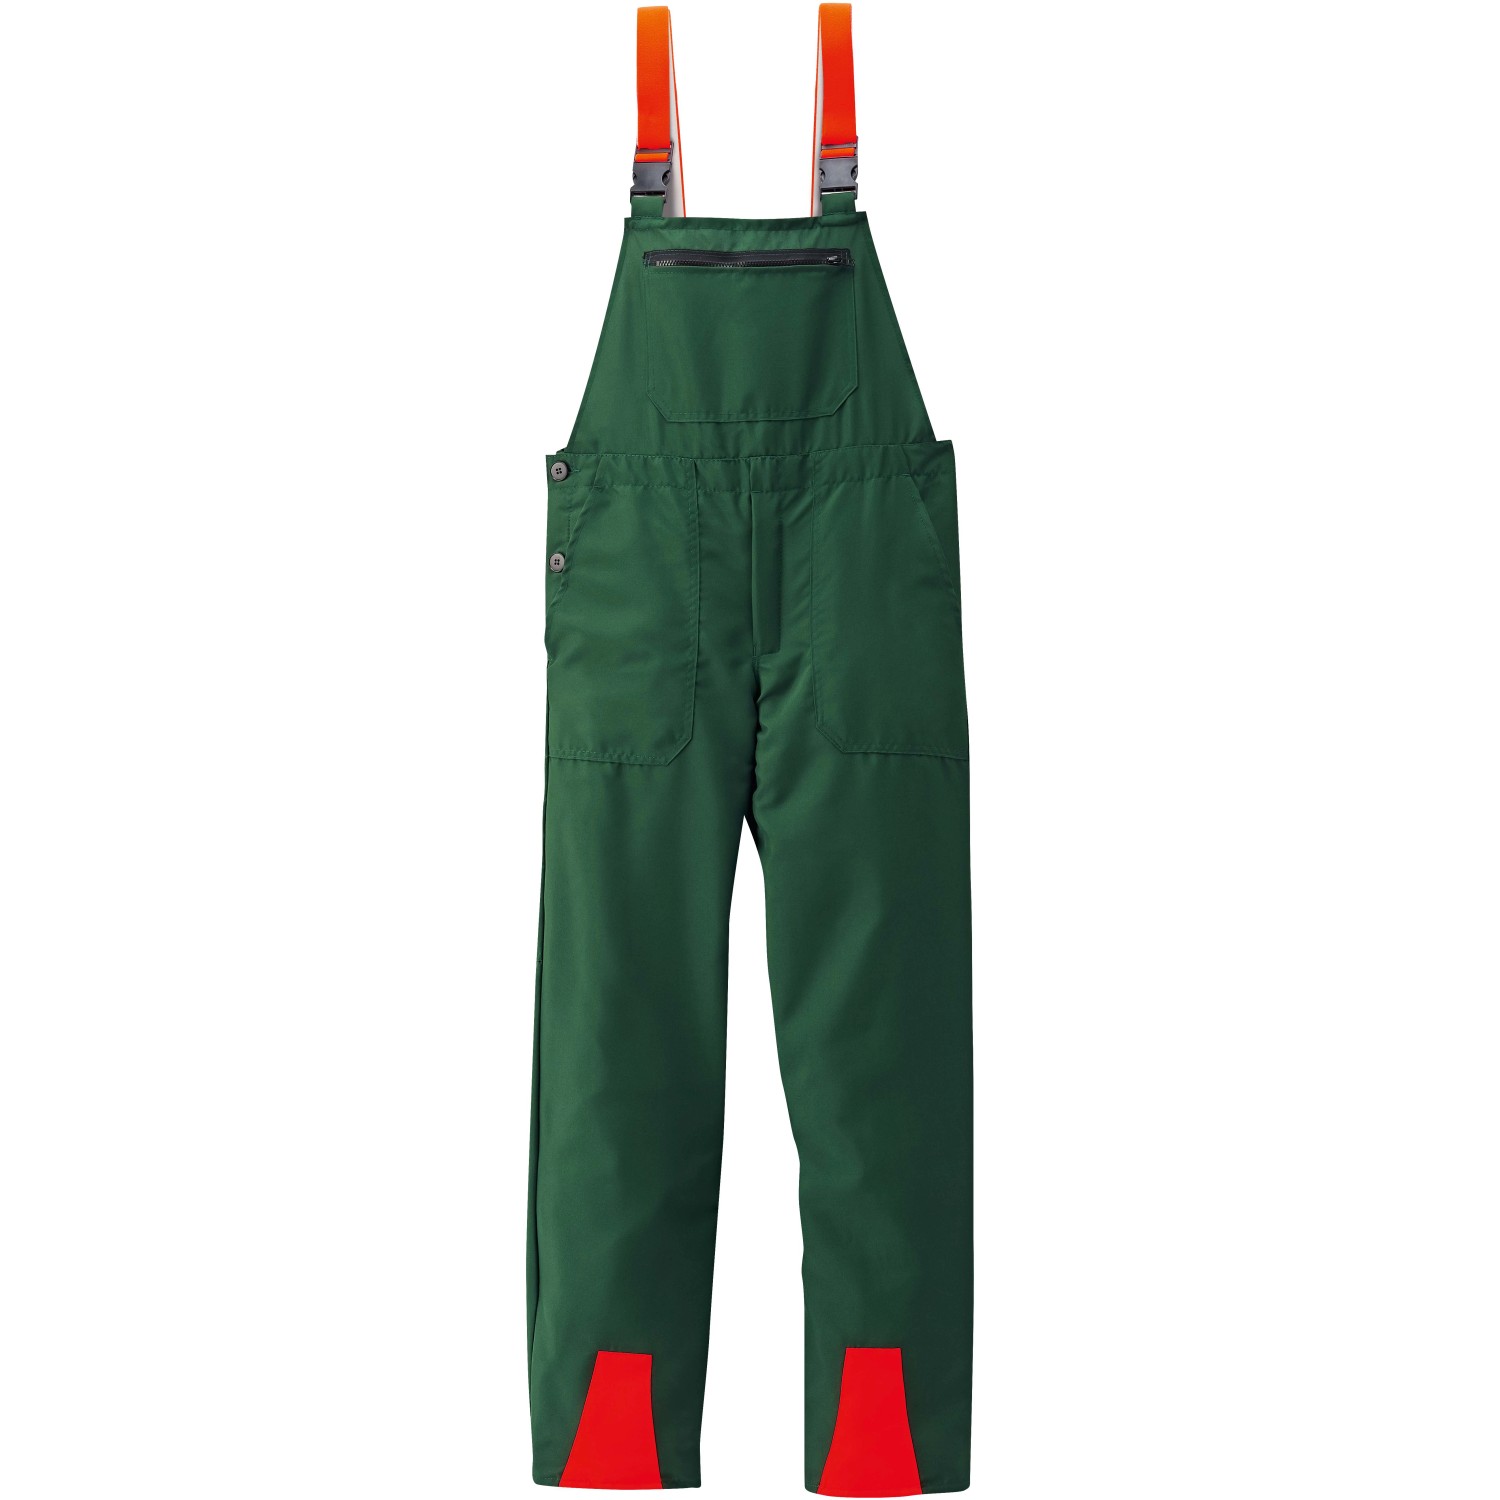 Schnittschutz-Latzhose Basic Grün-Orange Gr. 50 von Scheibler workwear